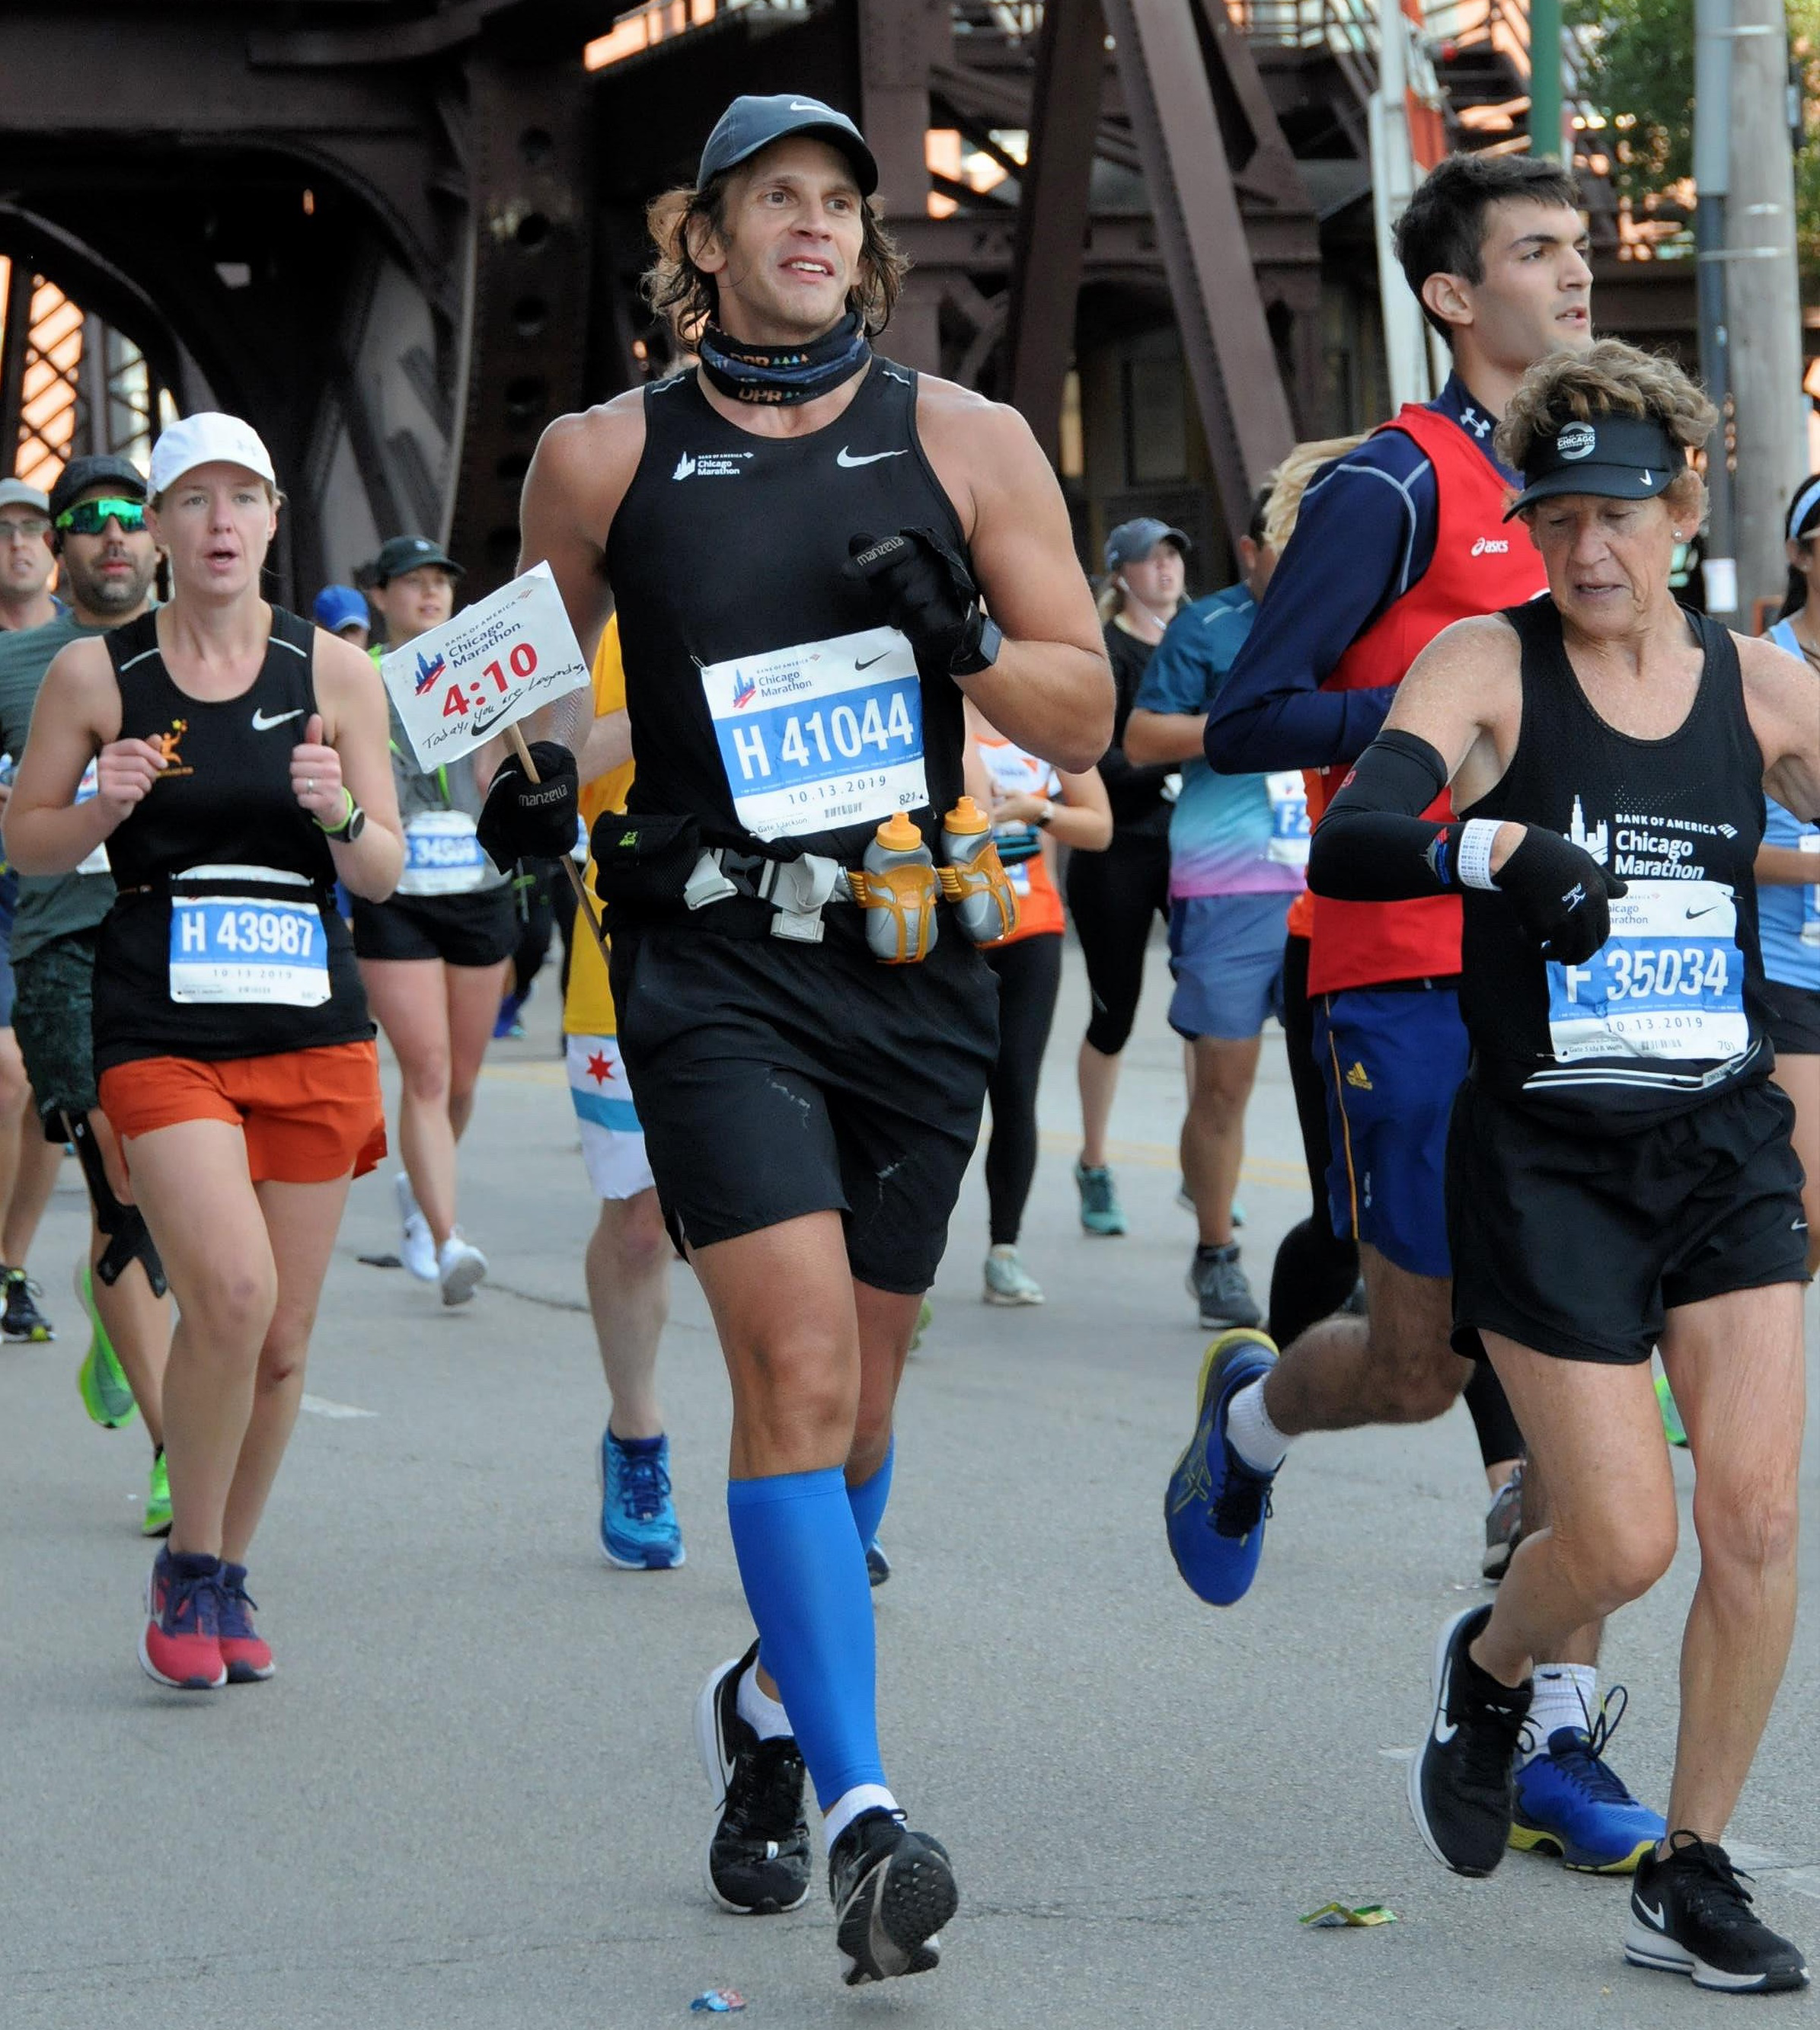 Man running Chicago marathon